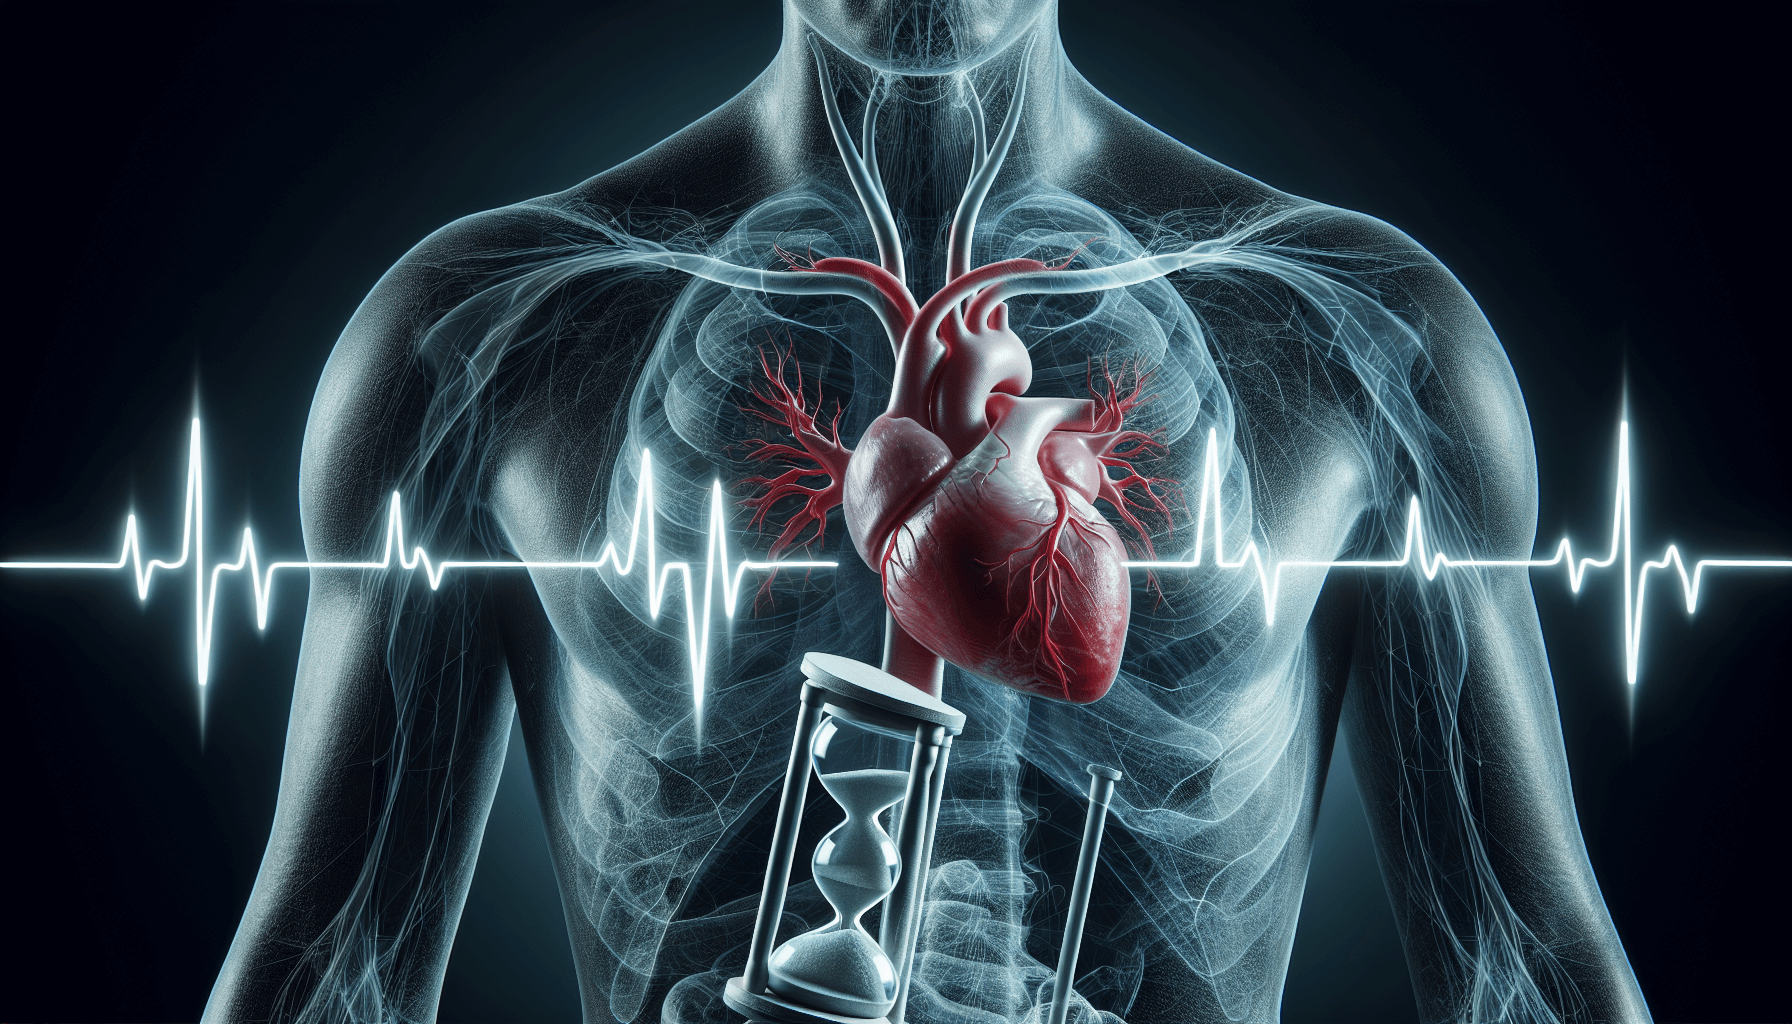 ภาพประกอบของหัวใจที่มีจังหวะไม่สม่ำเสมอซึ่งเป็นสัญลักษณ์ของภาวะหัวใจห้องบน